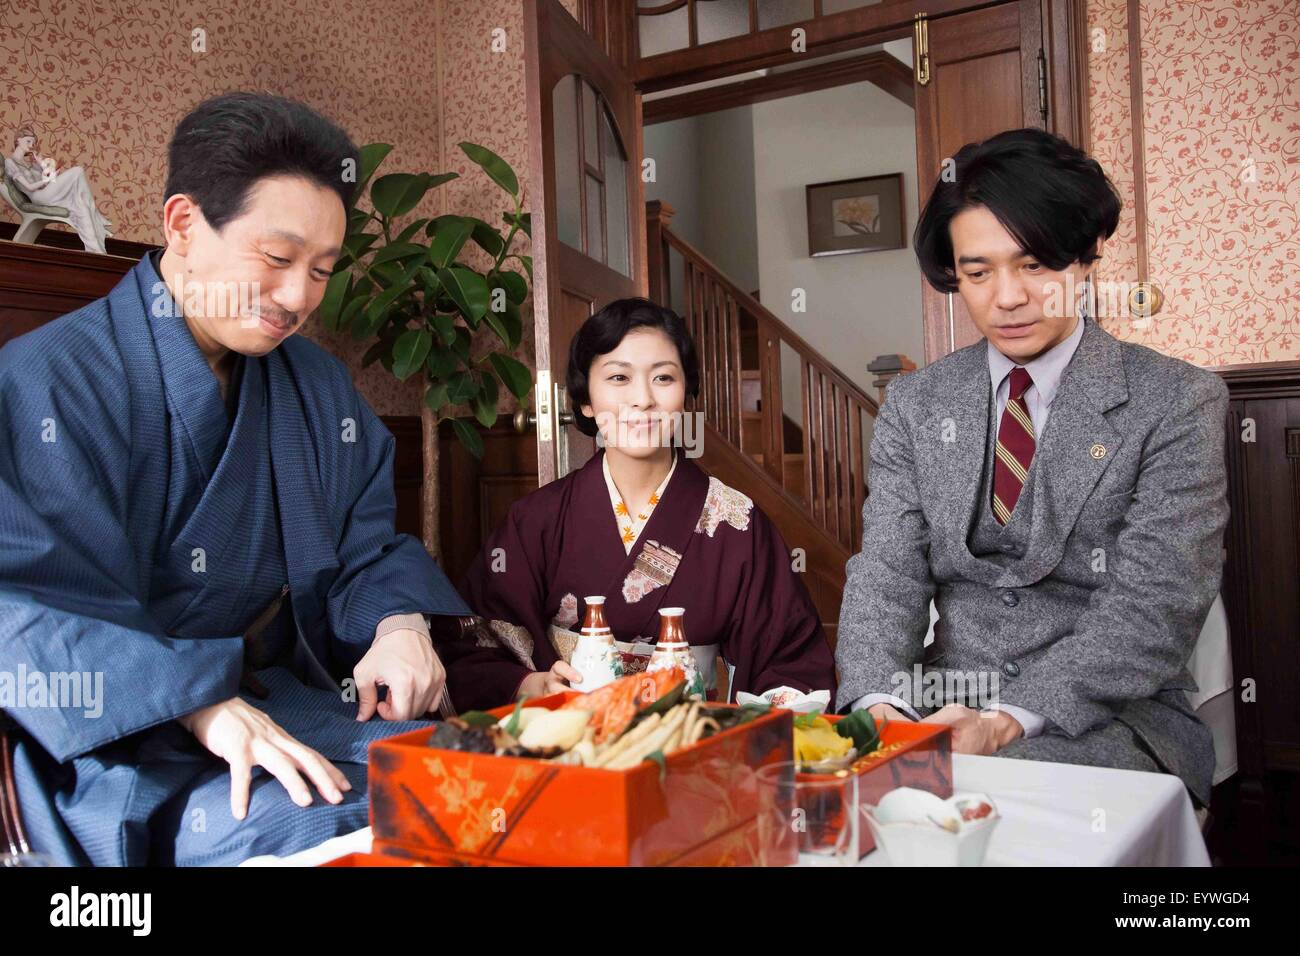 Chiisai Ouchi The Little House Year 2014 Japan Director Yoji Yamada Takataro Kataoka